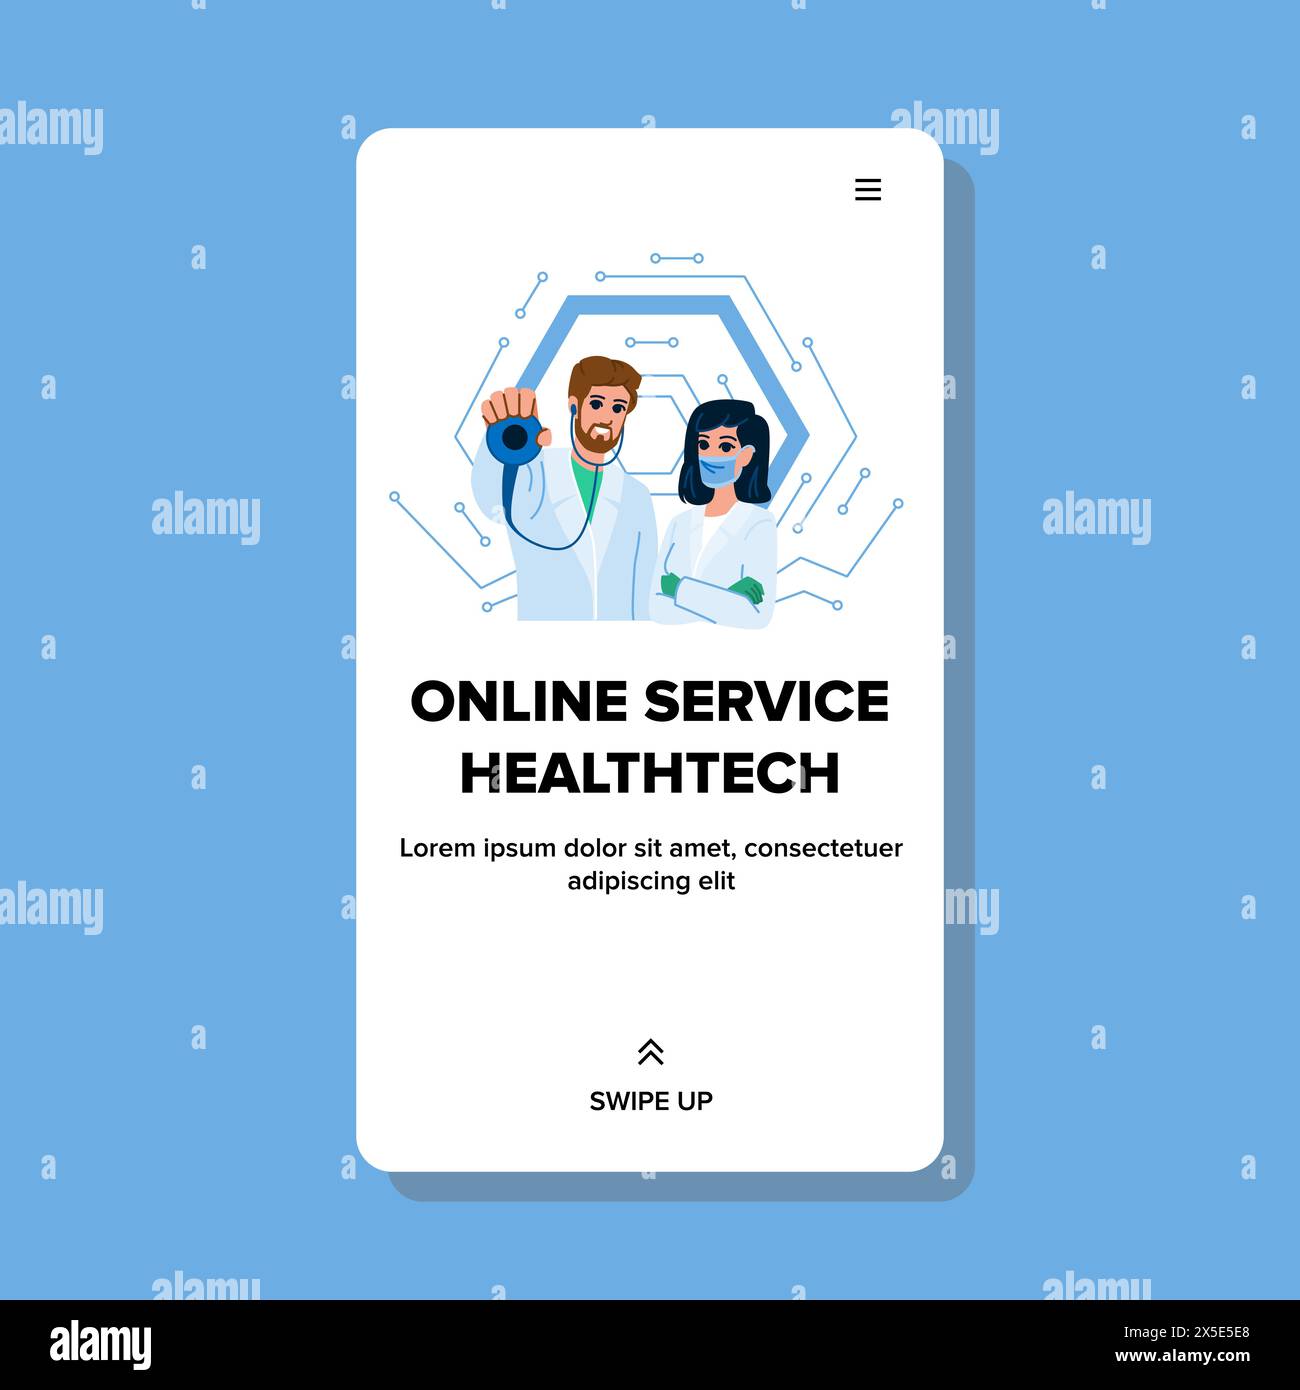 wellness online service healthtech vector Stock Vector